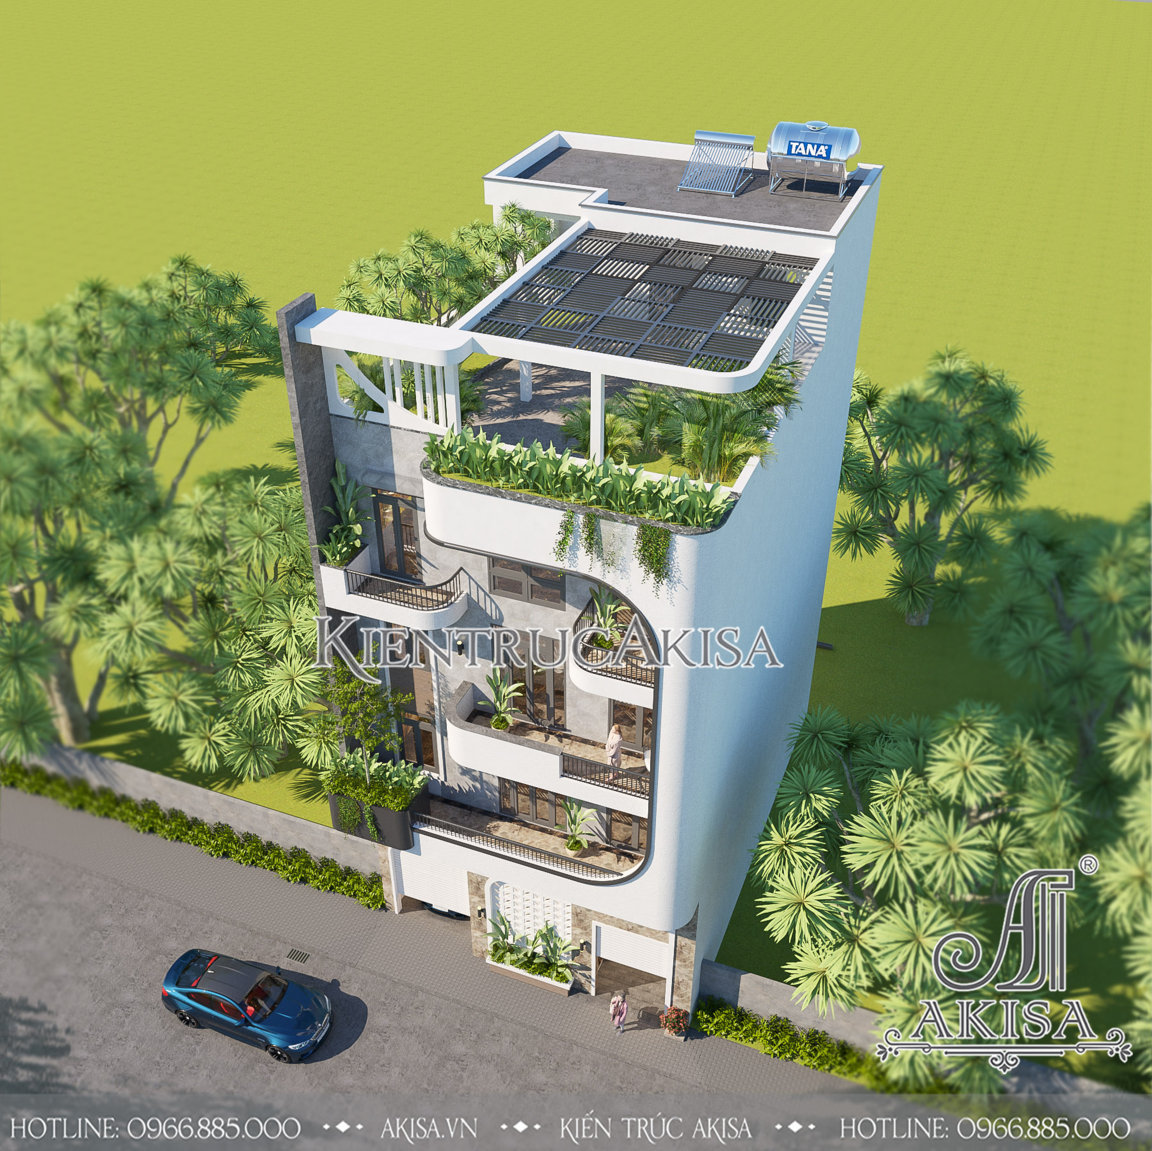 Thiết kế biệt thự phố hiện đại 4 tầng tại Phú Thọ khi nhìn từ trên cao